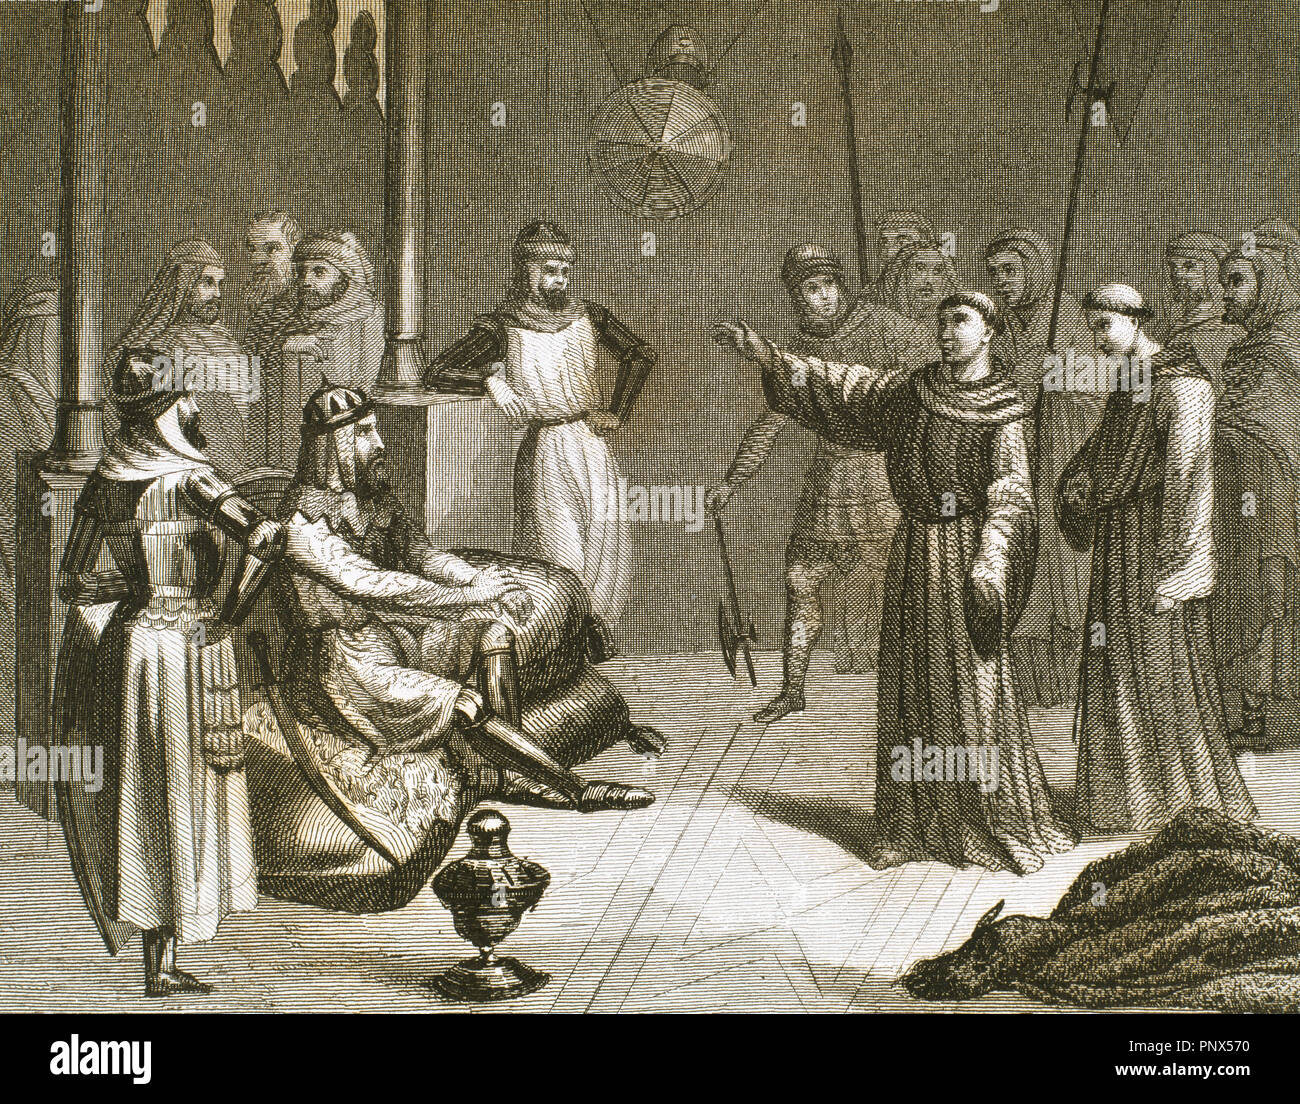 Rencontre entre Saint François d'assise (1181/1182-1226) et le Sultan Malek-el-Kamel (1180-1238) dans la région de Alexandria (Égypte). Gravure, 1851. Banque D'Images